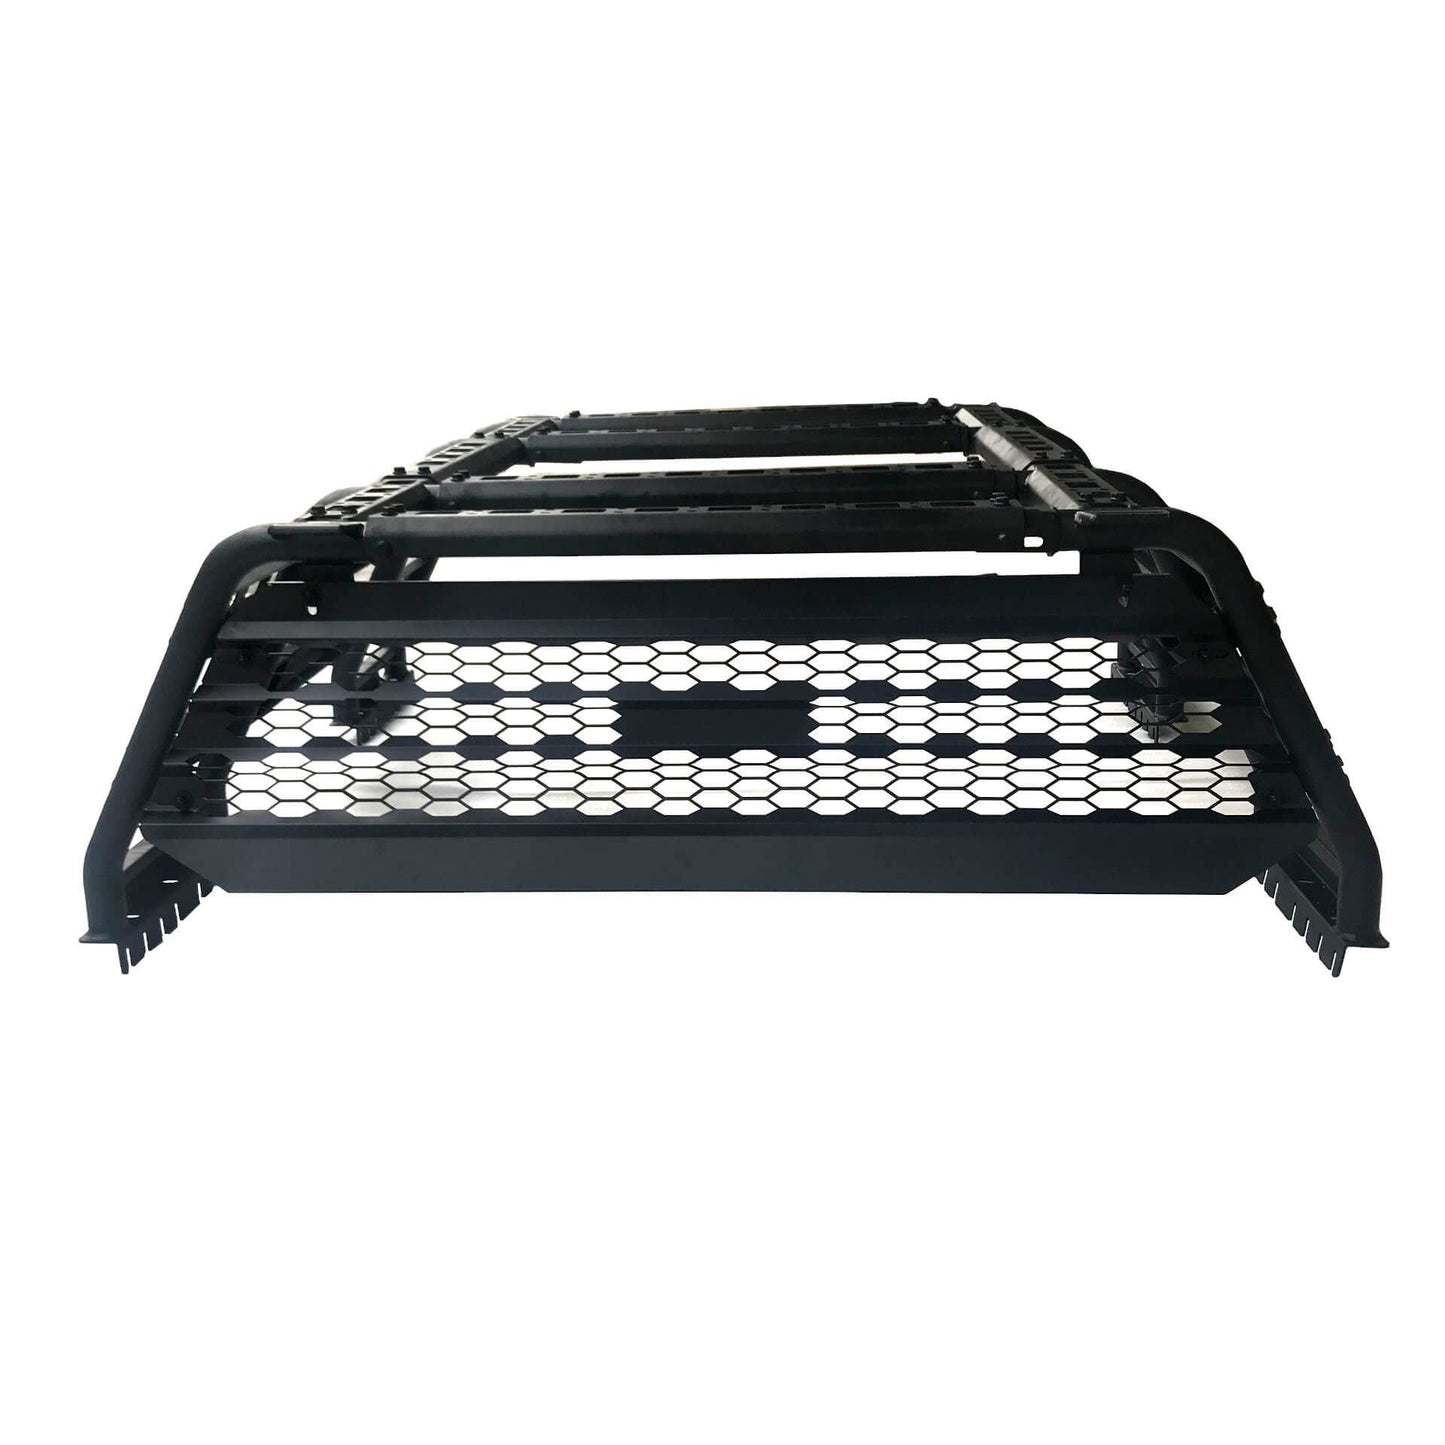 Adjustable Expedition Load Bed Rack Frame System for Mitsubishi L200 05-15